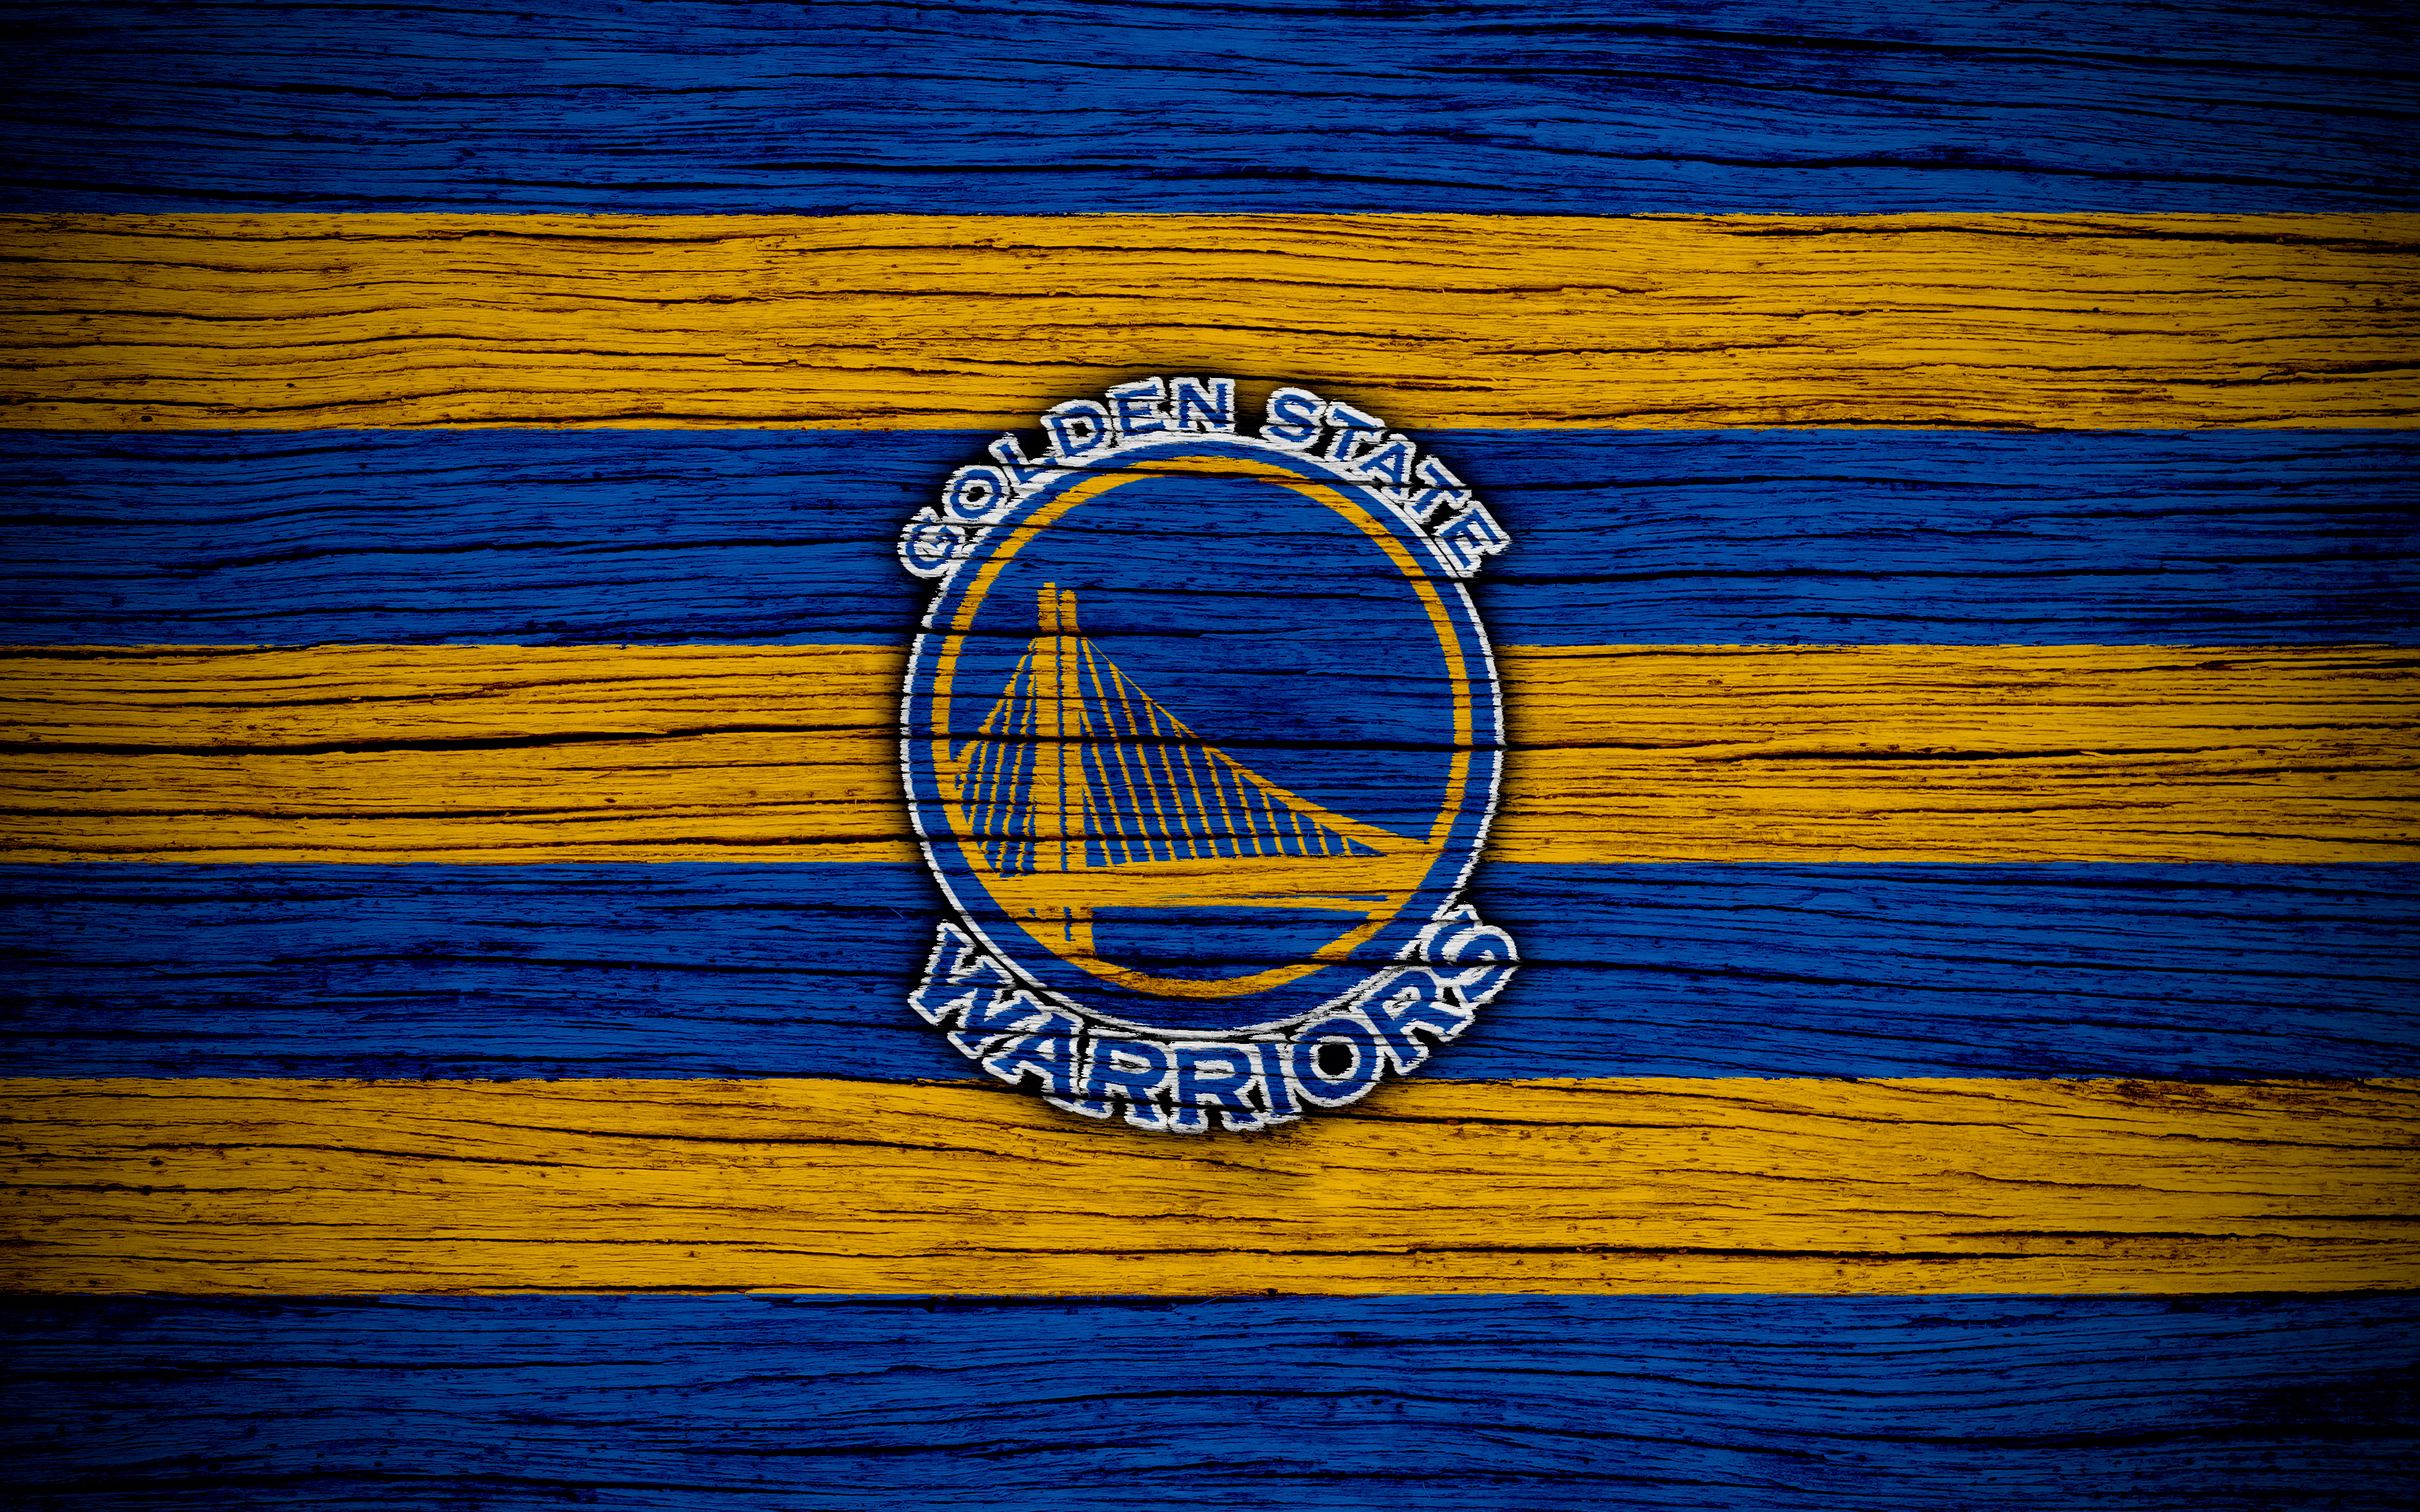 golden state wallpaper,flag,blue,electric blue,emblem,symbol